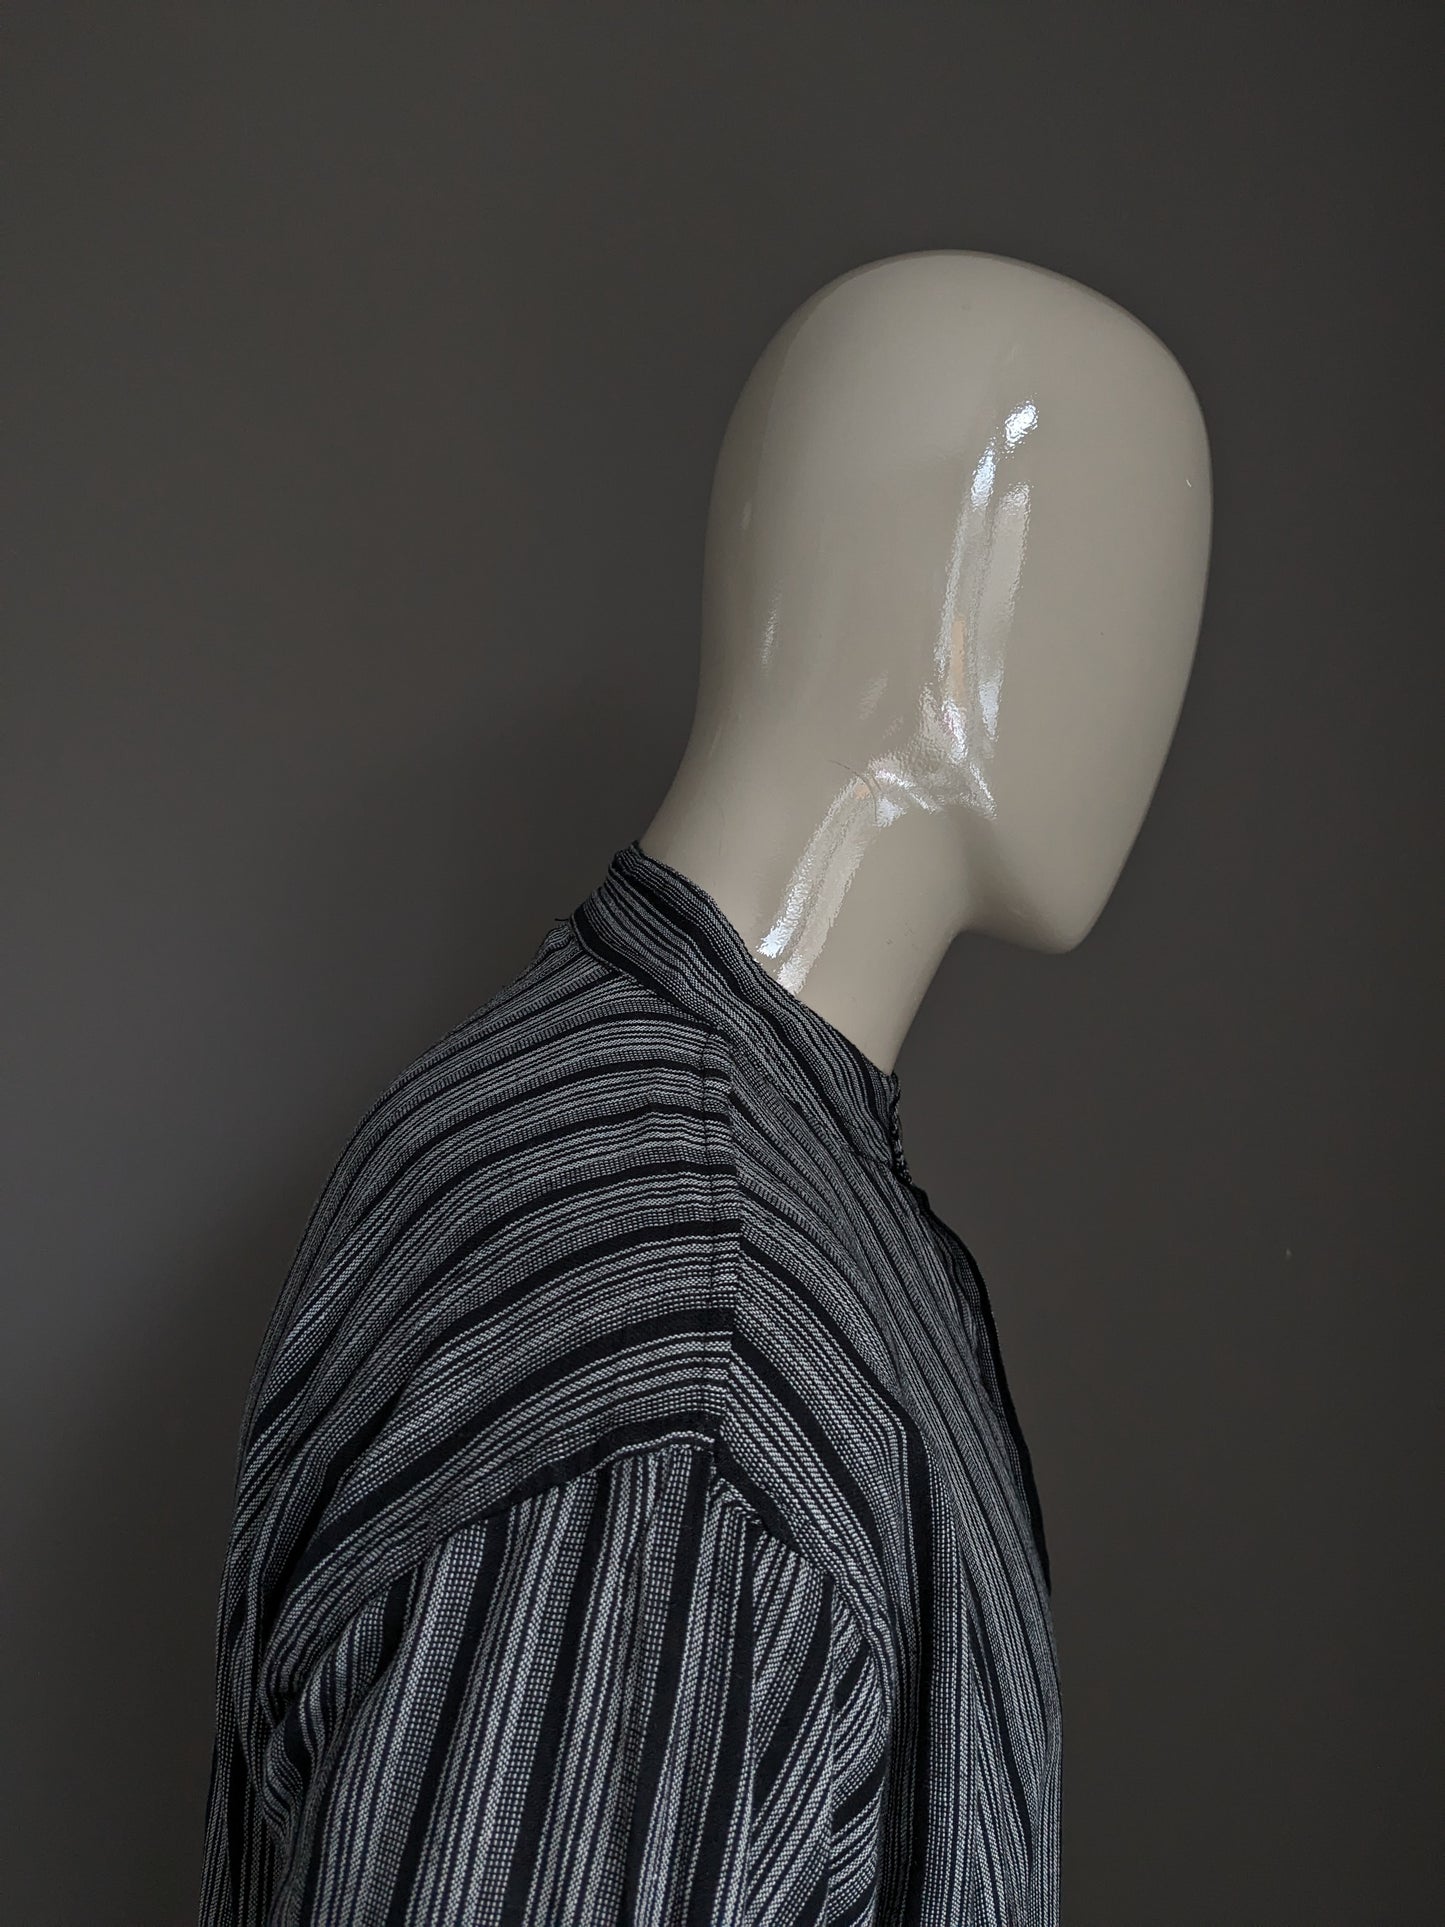 Magion / camicia Yuli Polo Vintage con alzato / Farmers / Collar MAO. Strisce grigio nero con borsa. Taglia XL.